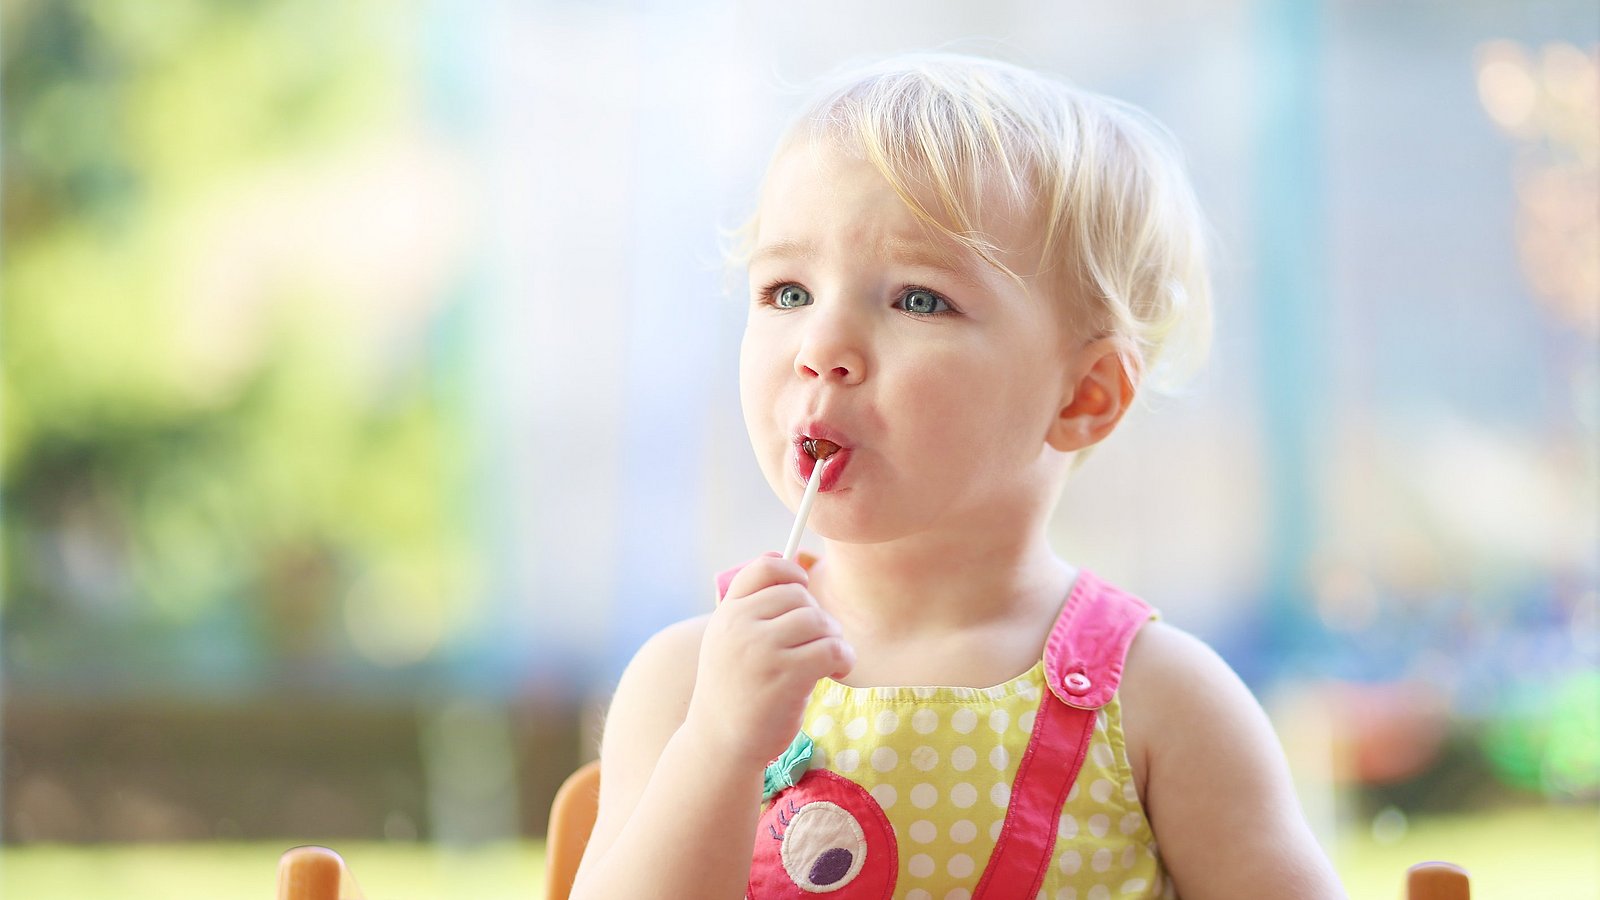 Kind mit Lutscher im Mund